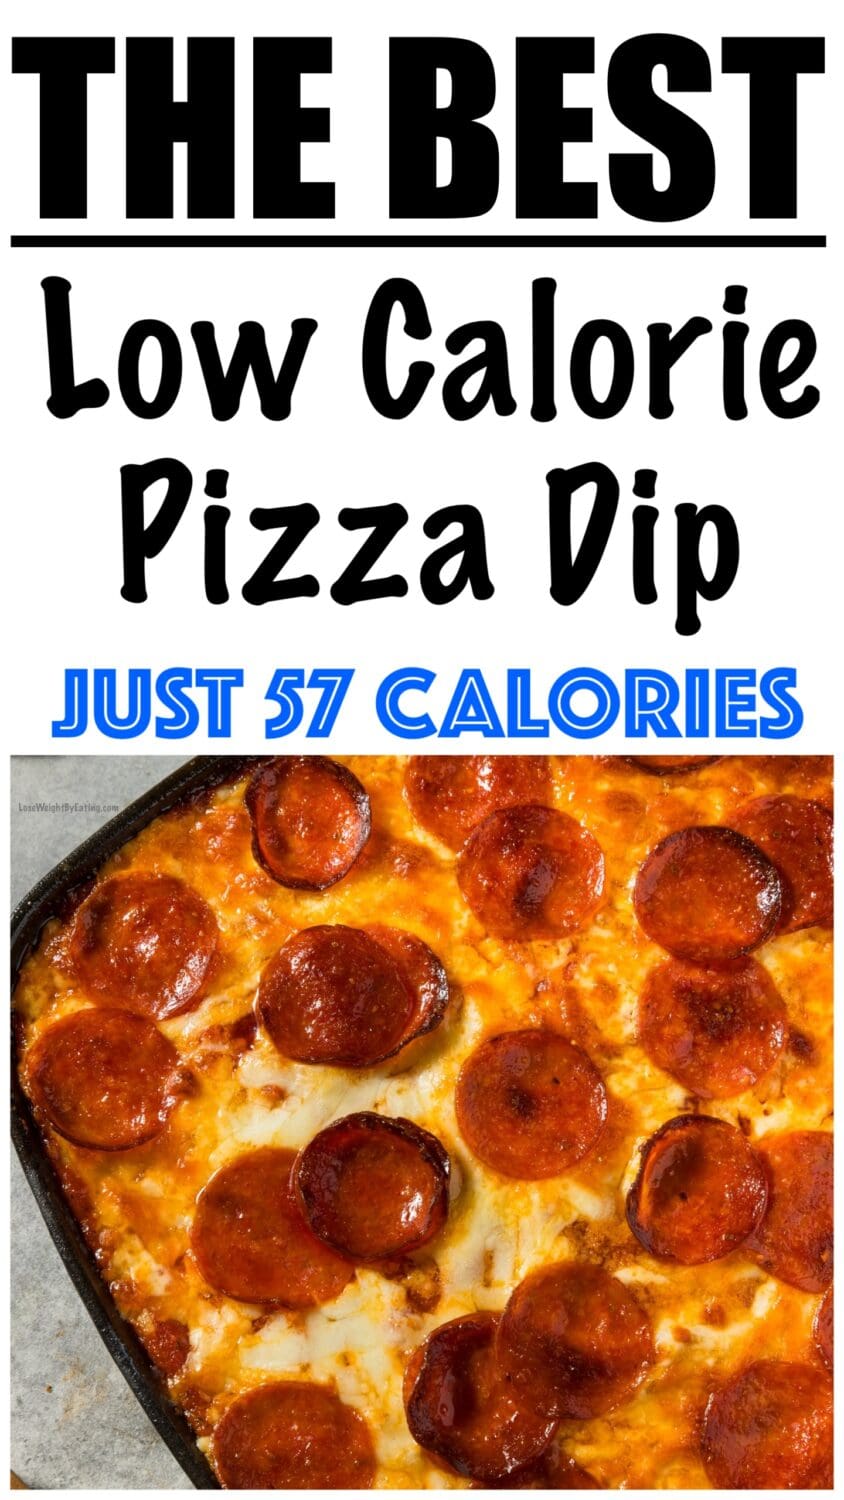 Low Calorie Pizza Dip
